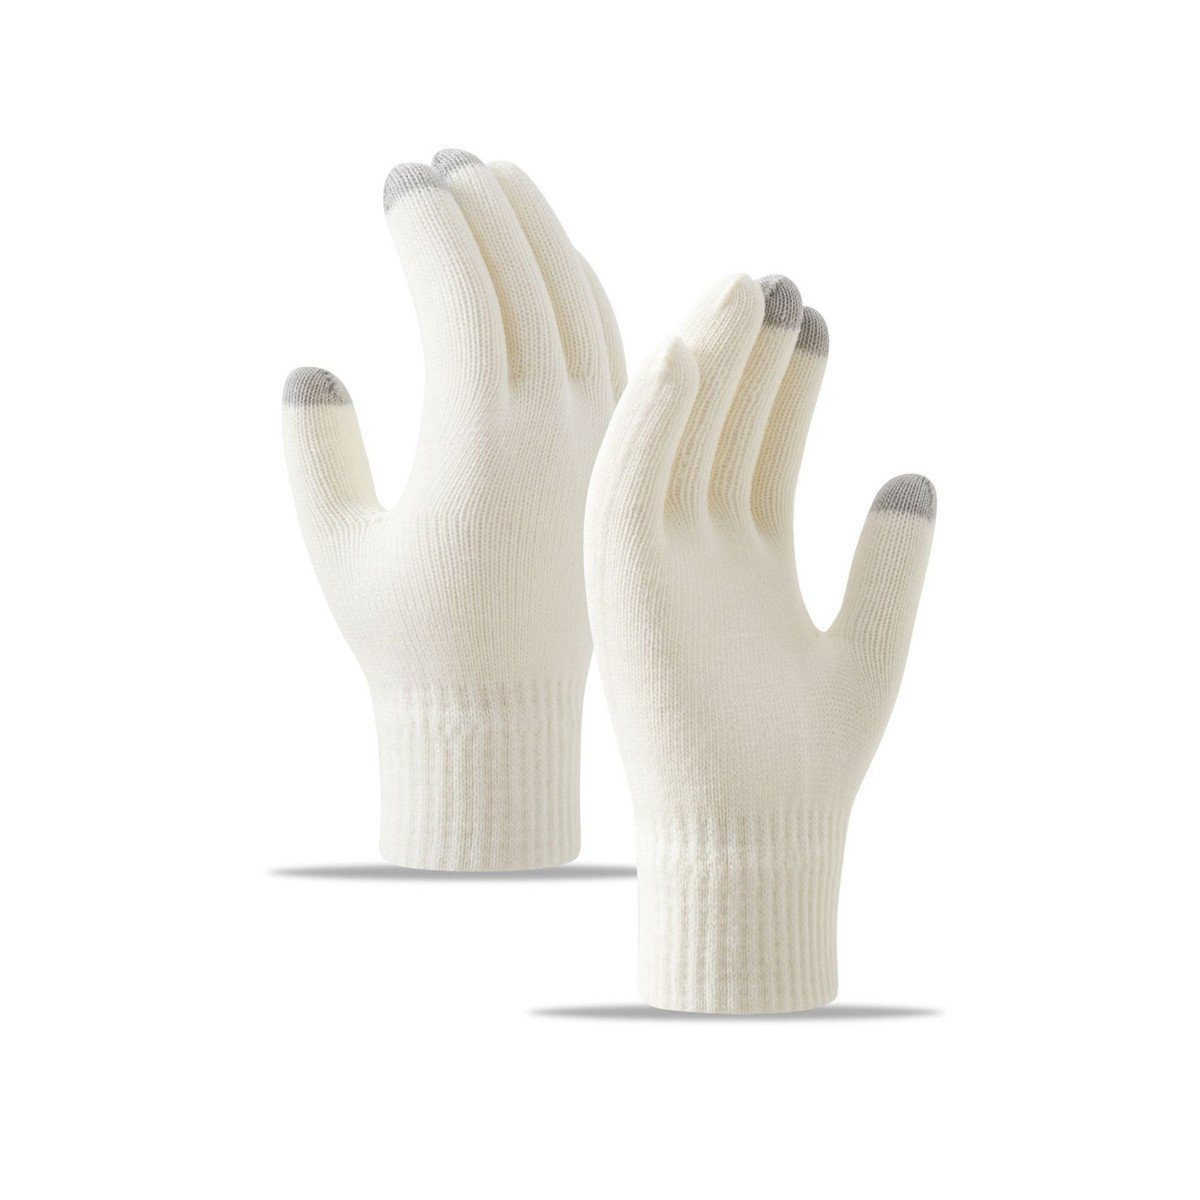 Die Sterne Trikot-Handschuhe Gestrickte Handschuhe mit Schneeflocken-, Strass- und Fleece-Stickerei Weiß